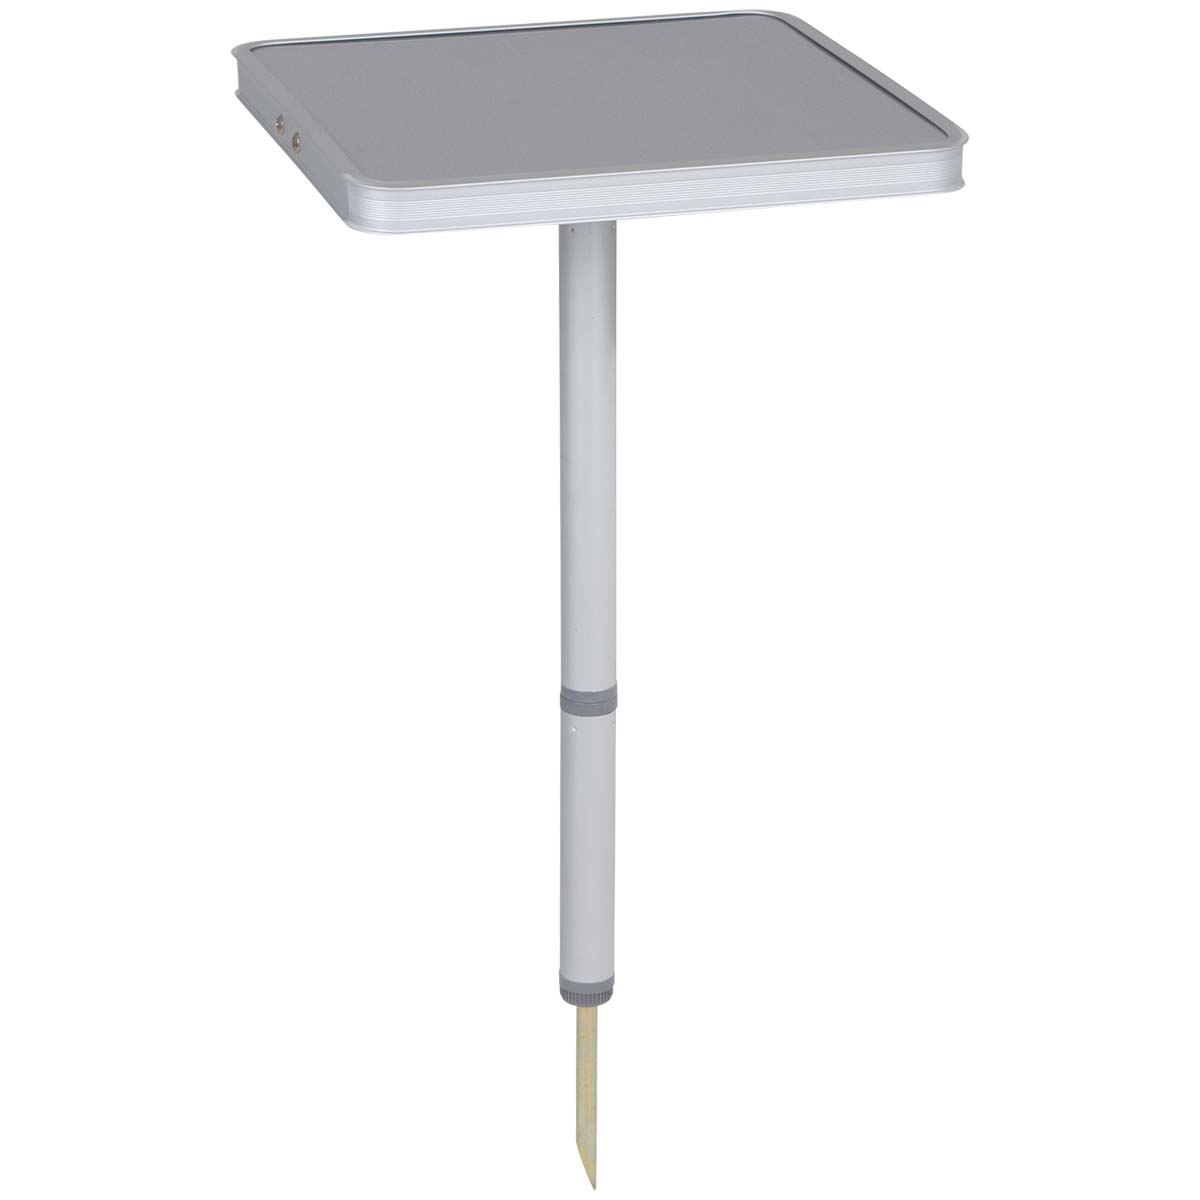 1402722 Een zeer praktische priktafel. Deze tafel is eenvoudig in de grond te steken en hierdoor ideaal voor gebruik op ongelijke ondergronden. De tafel is eenvoudig en compact op te bergen door de afneembare poot. Deze kan onder het tafelblad worden bevestigd. Ingeklapt (lxbxh): 26x26x4,5 centimeter.